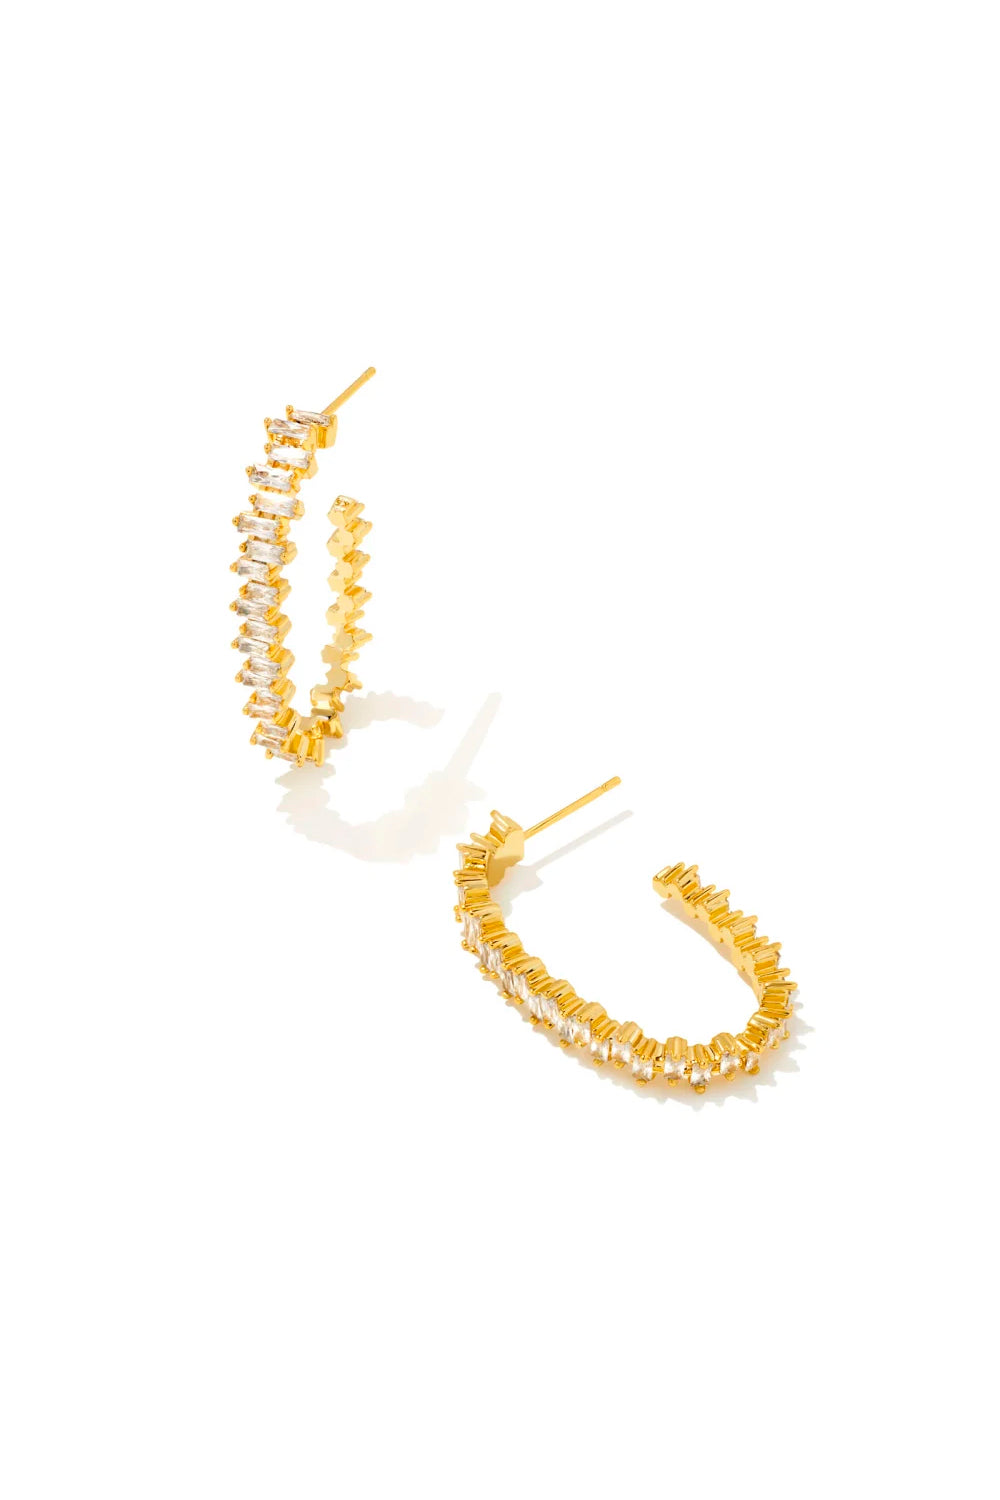 Kendra Scott: Juliette Gold Oval Hoop Earrings - White Crystal | Makk Fashions